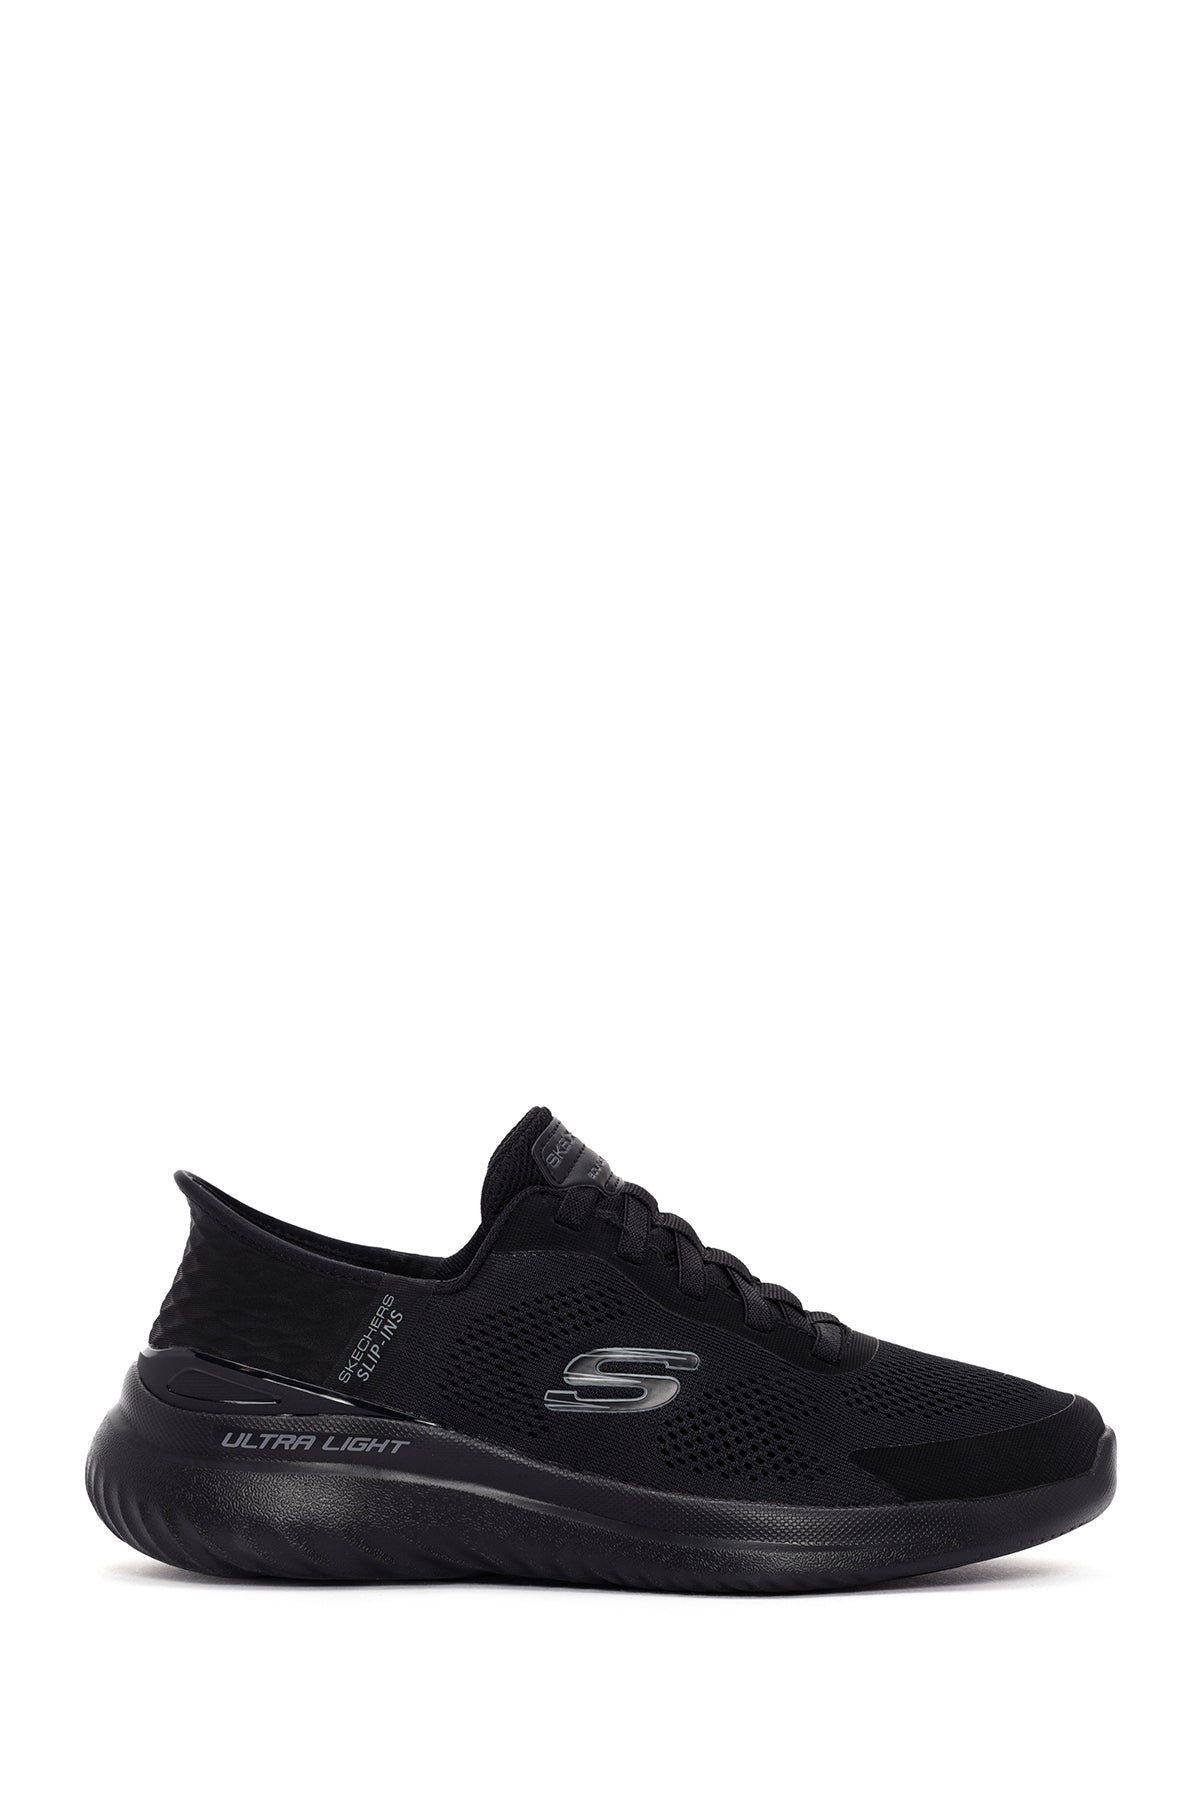 Skechers Erkek Siyah Kumaş Ayakkabı